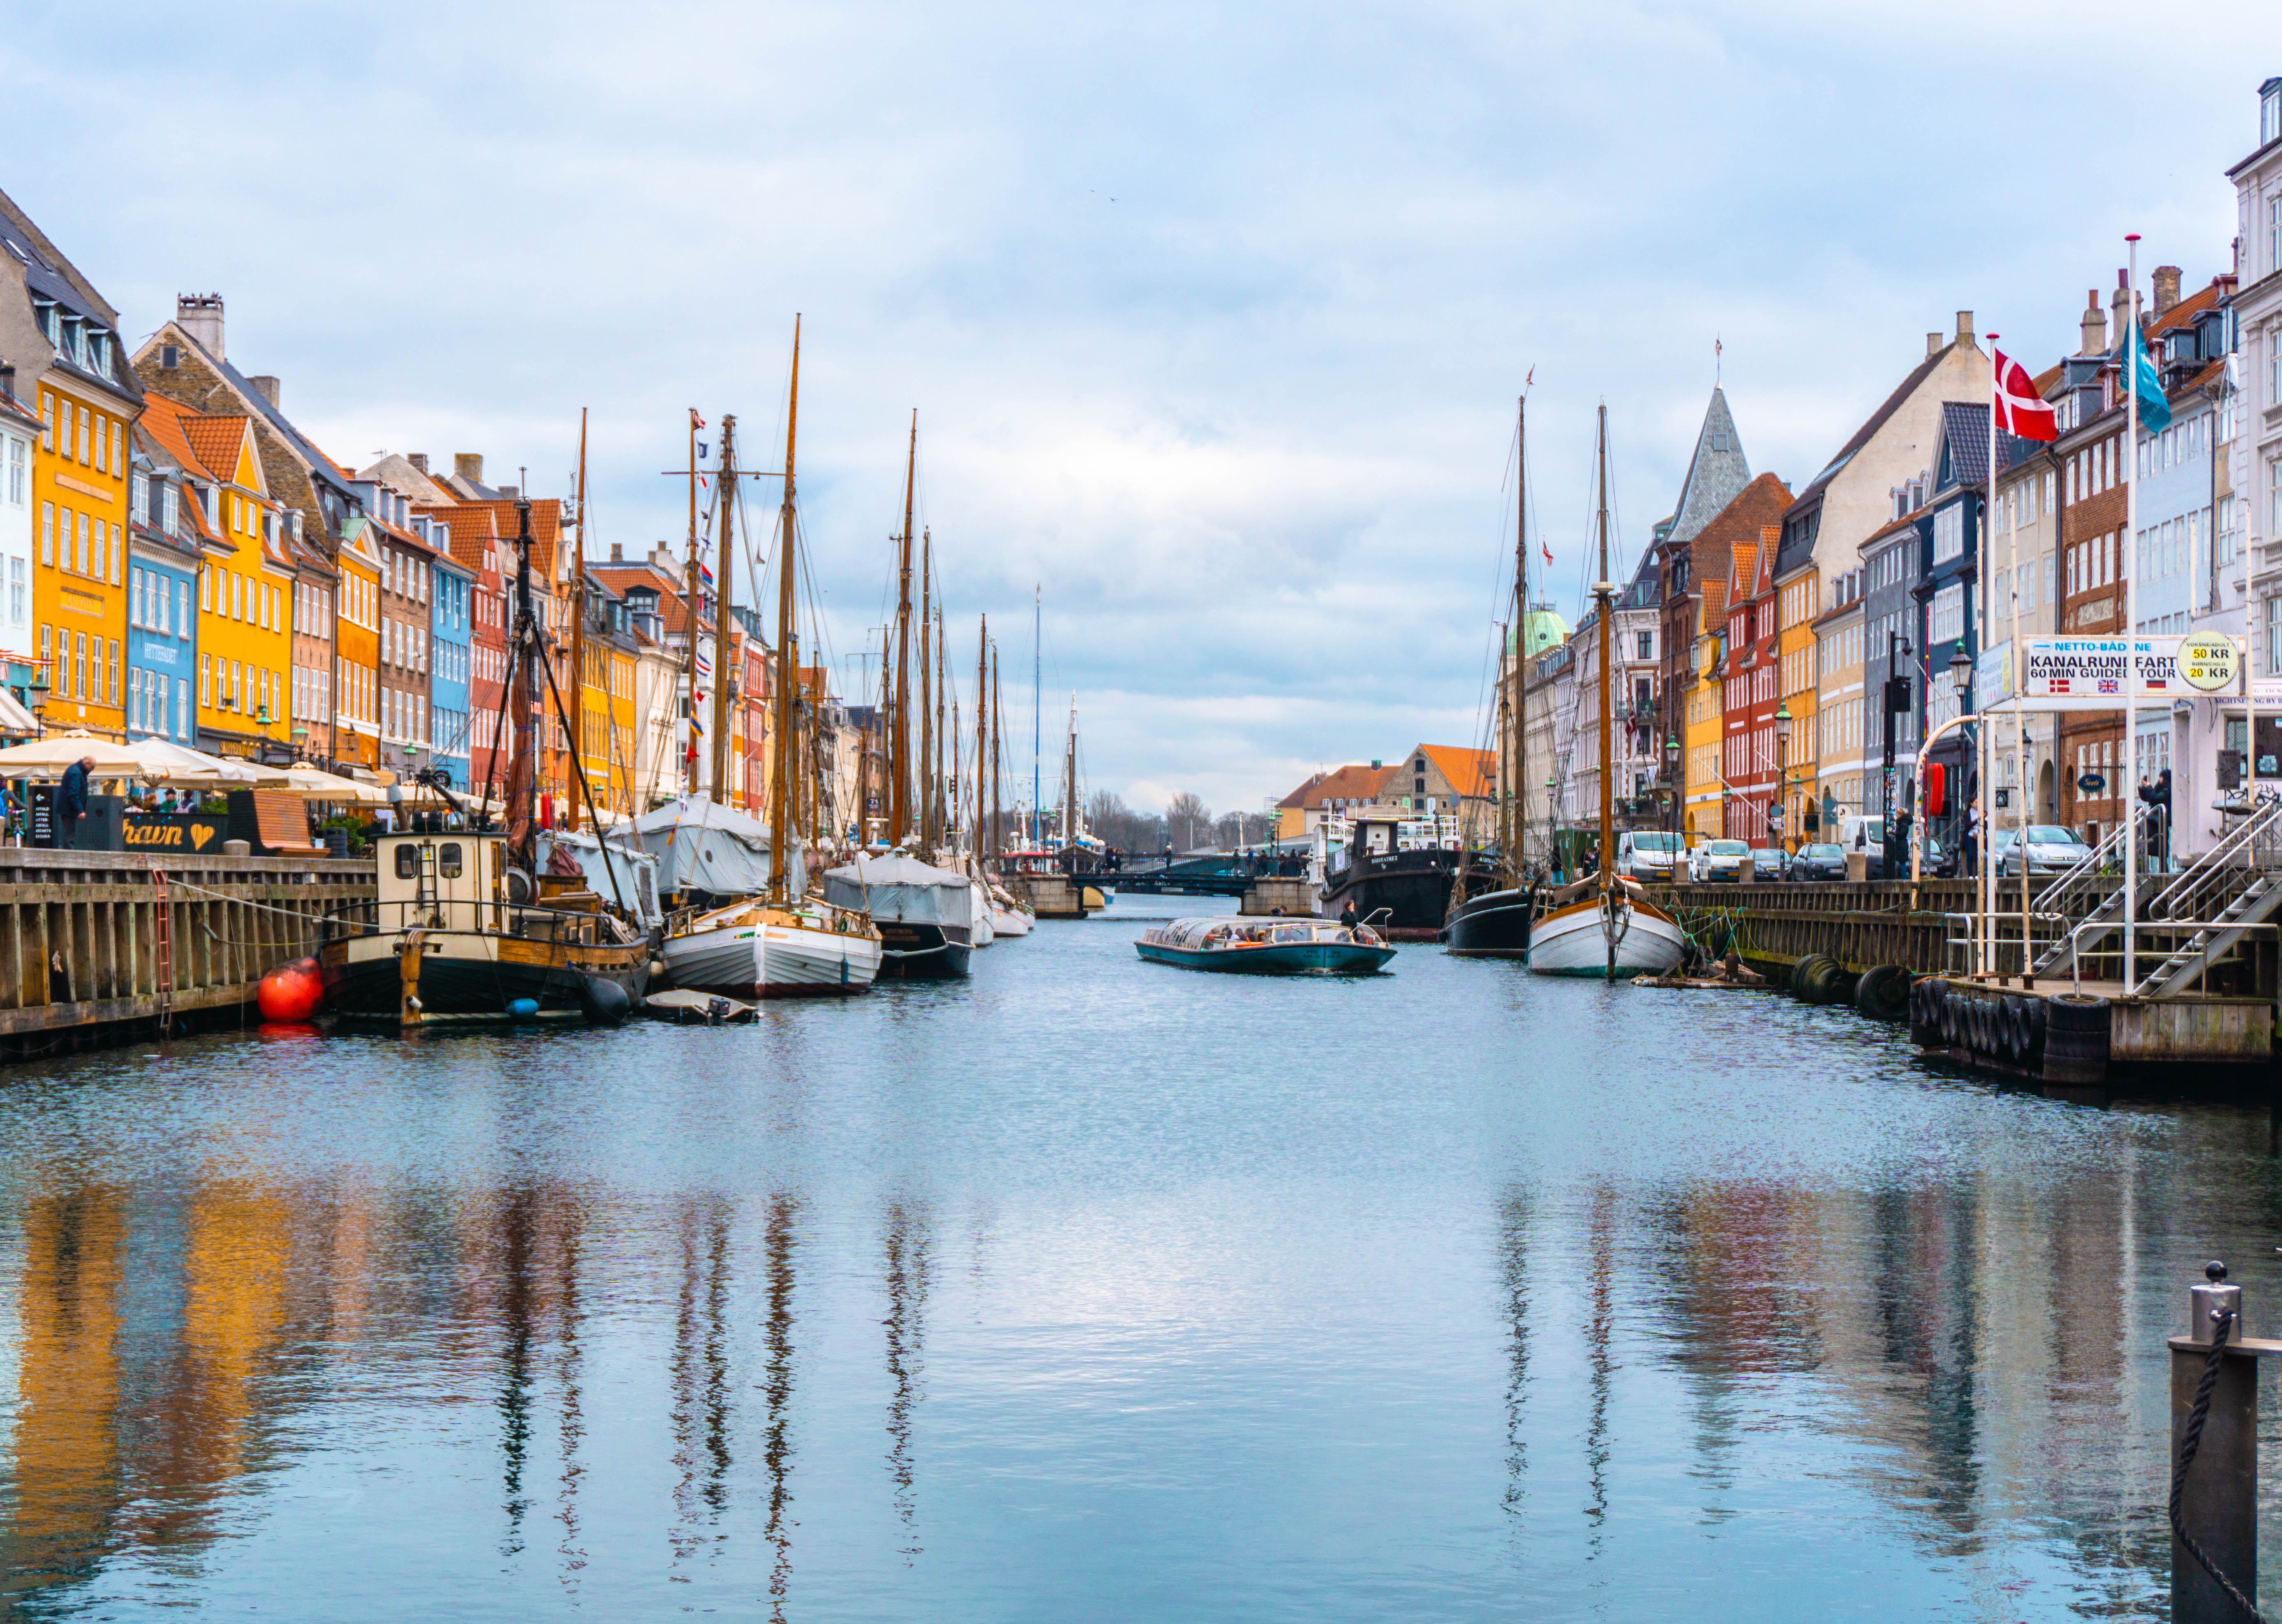 A boat-littered canal in Copenhagen, Denmark.